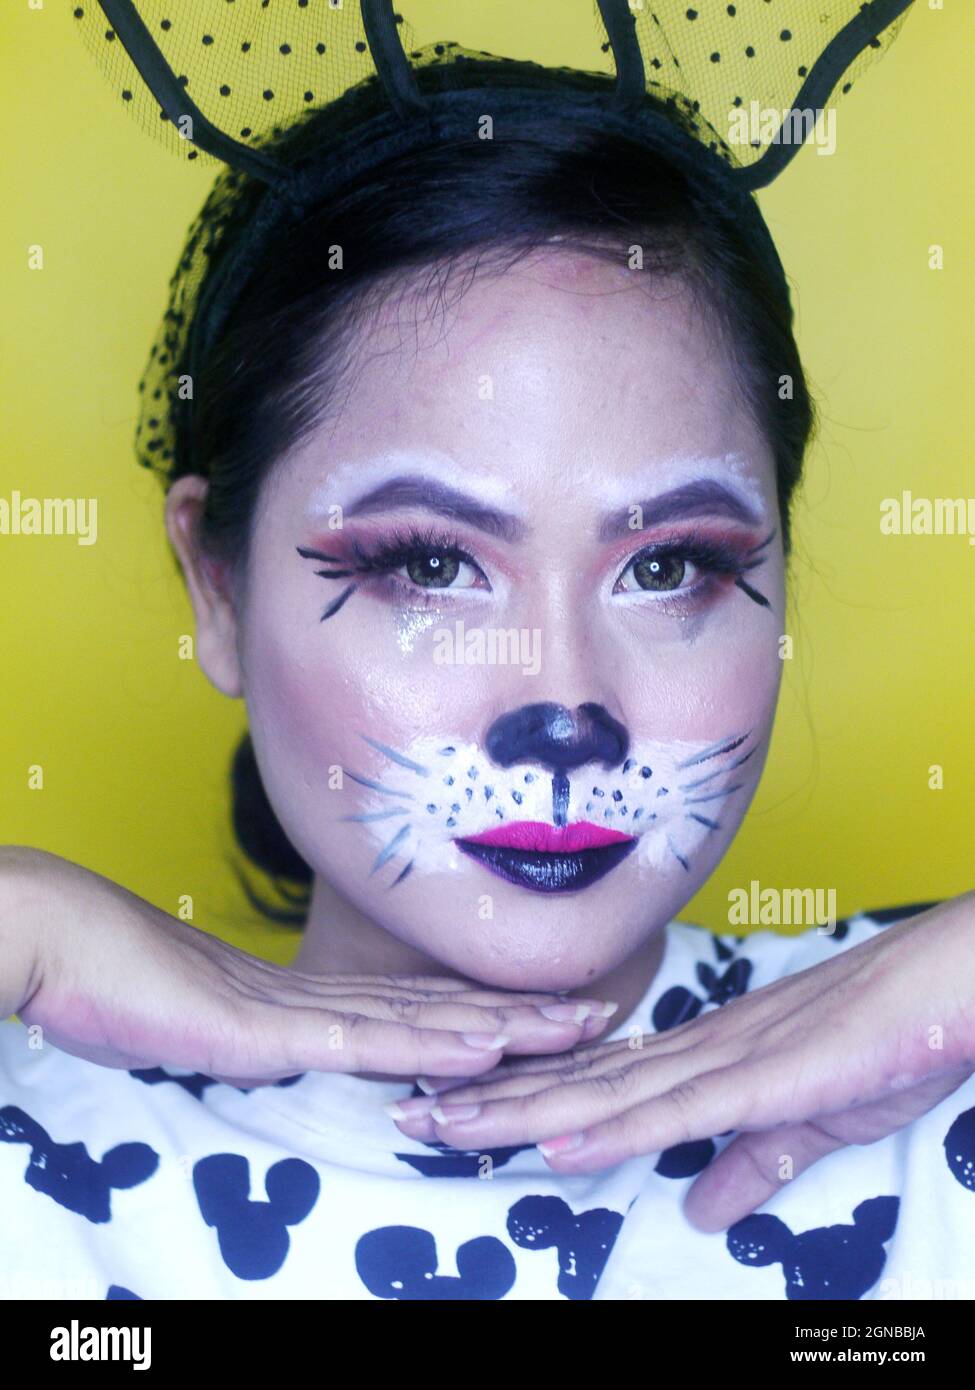 Portrait de fille asiatique avec maquillage fantaisie. Banque D'Images